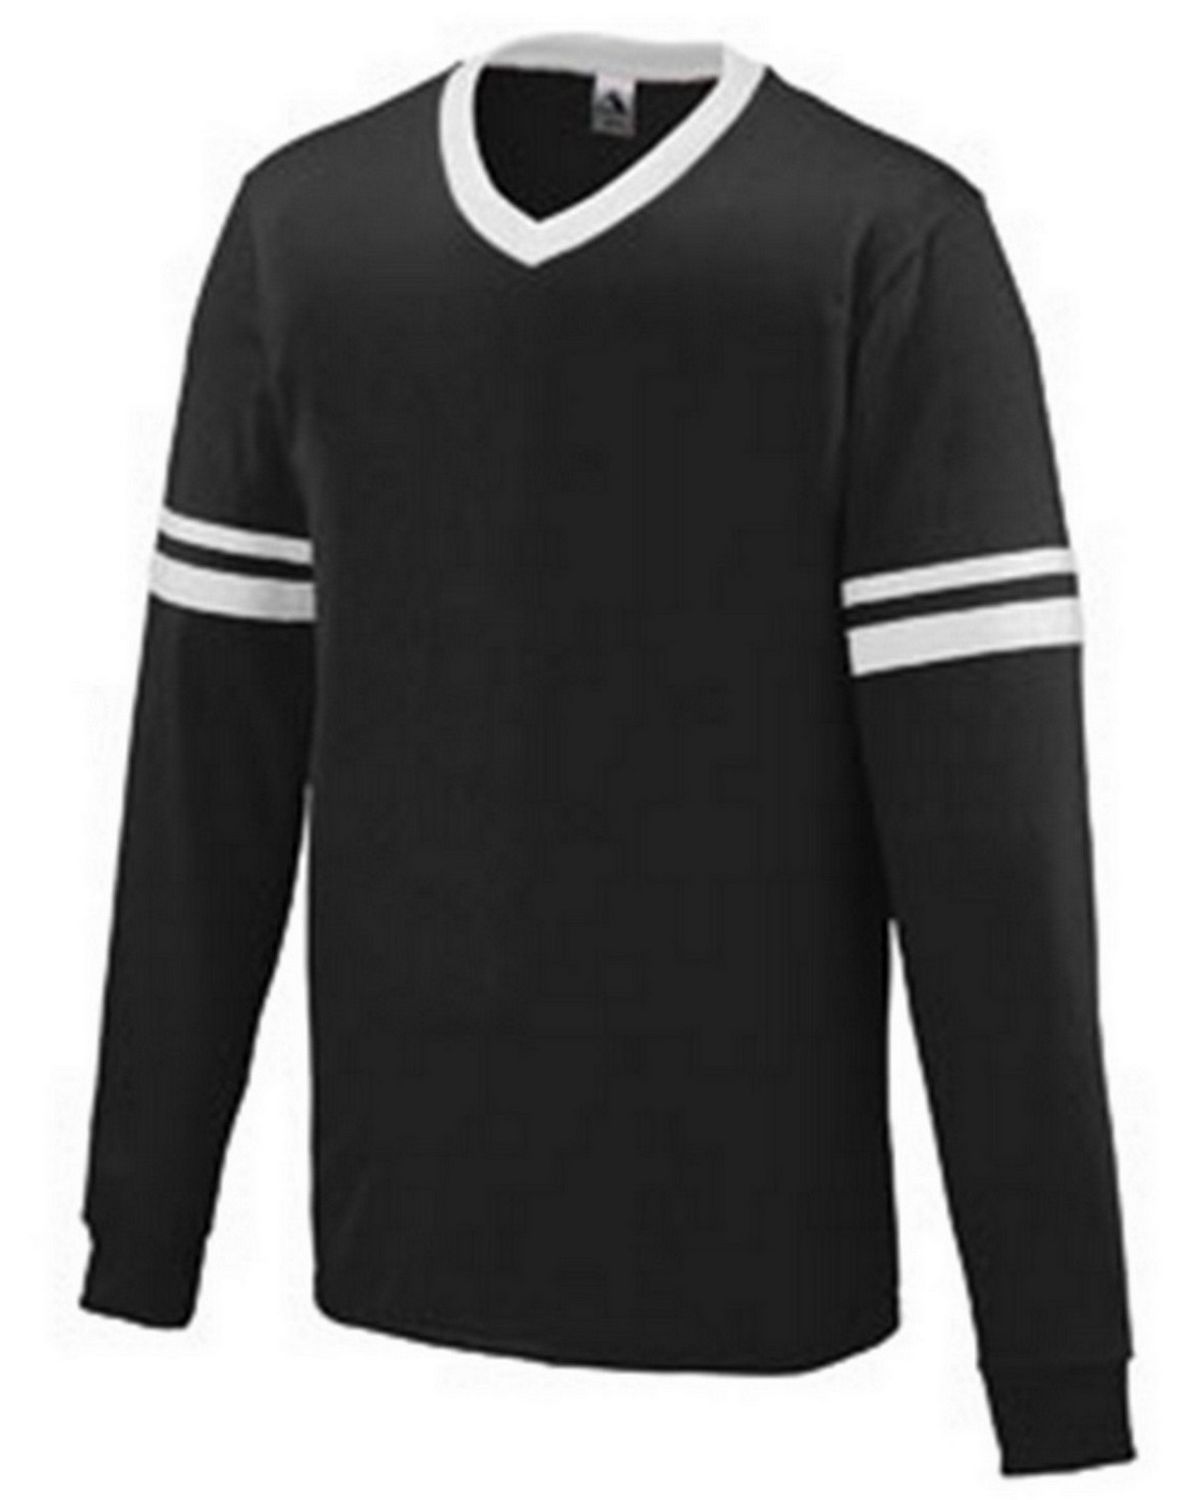 Augusta Sportswear 372 Men's Long-Sleeve Stripe Jersey